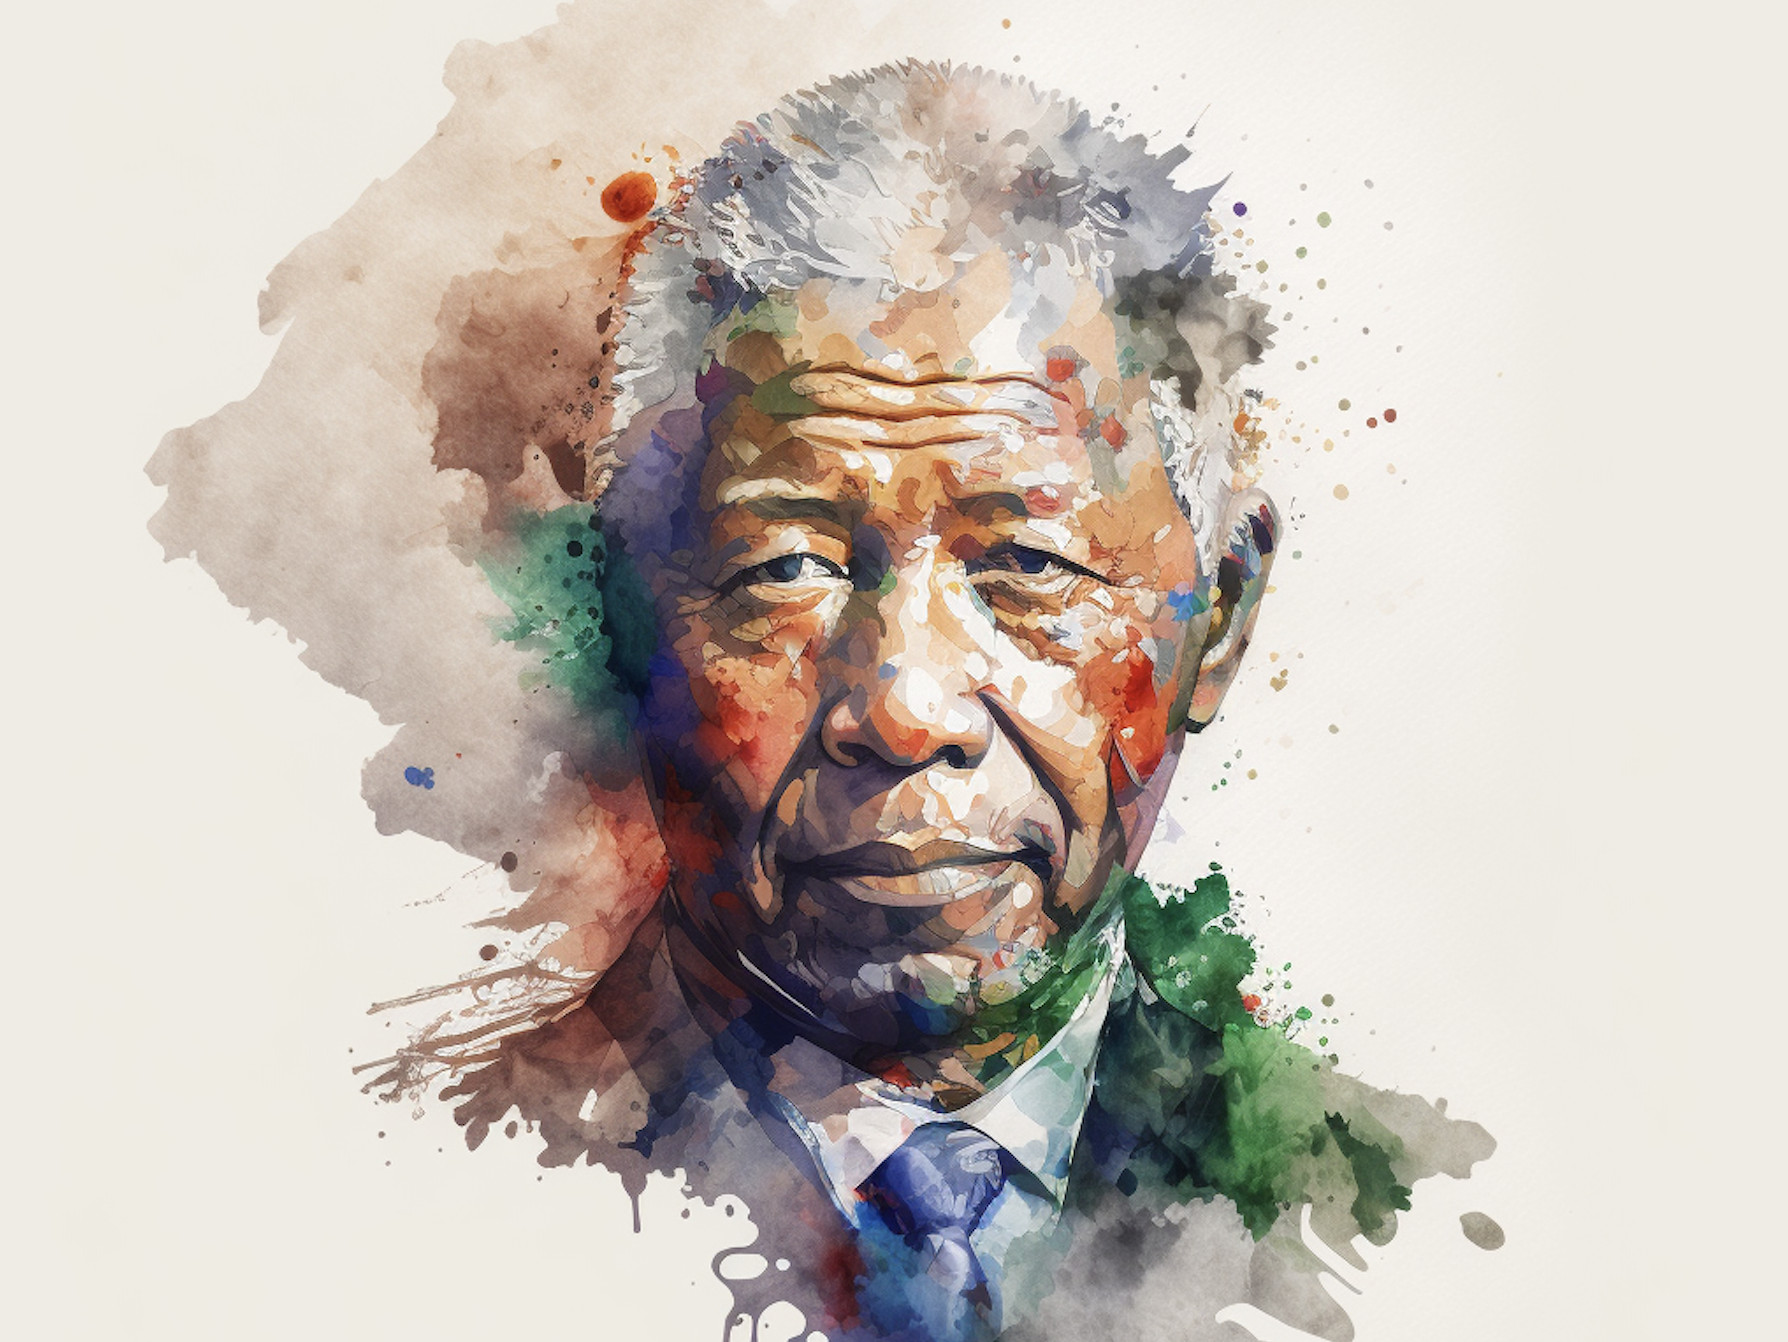 Νέλσον Μαντέλα: Ο άνθρωπος σύμβολο των αγώνων κατά του ρατσισμού